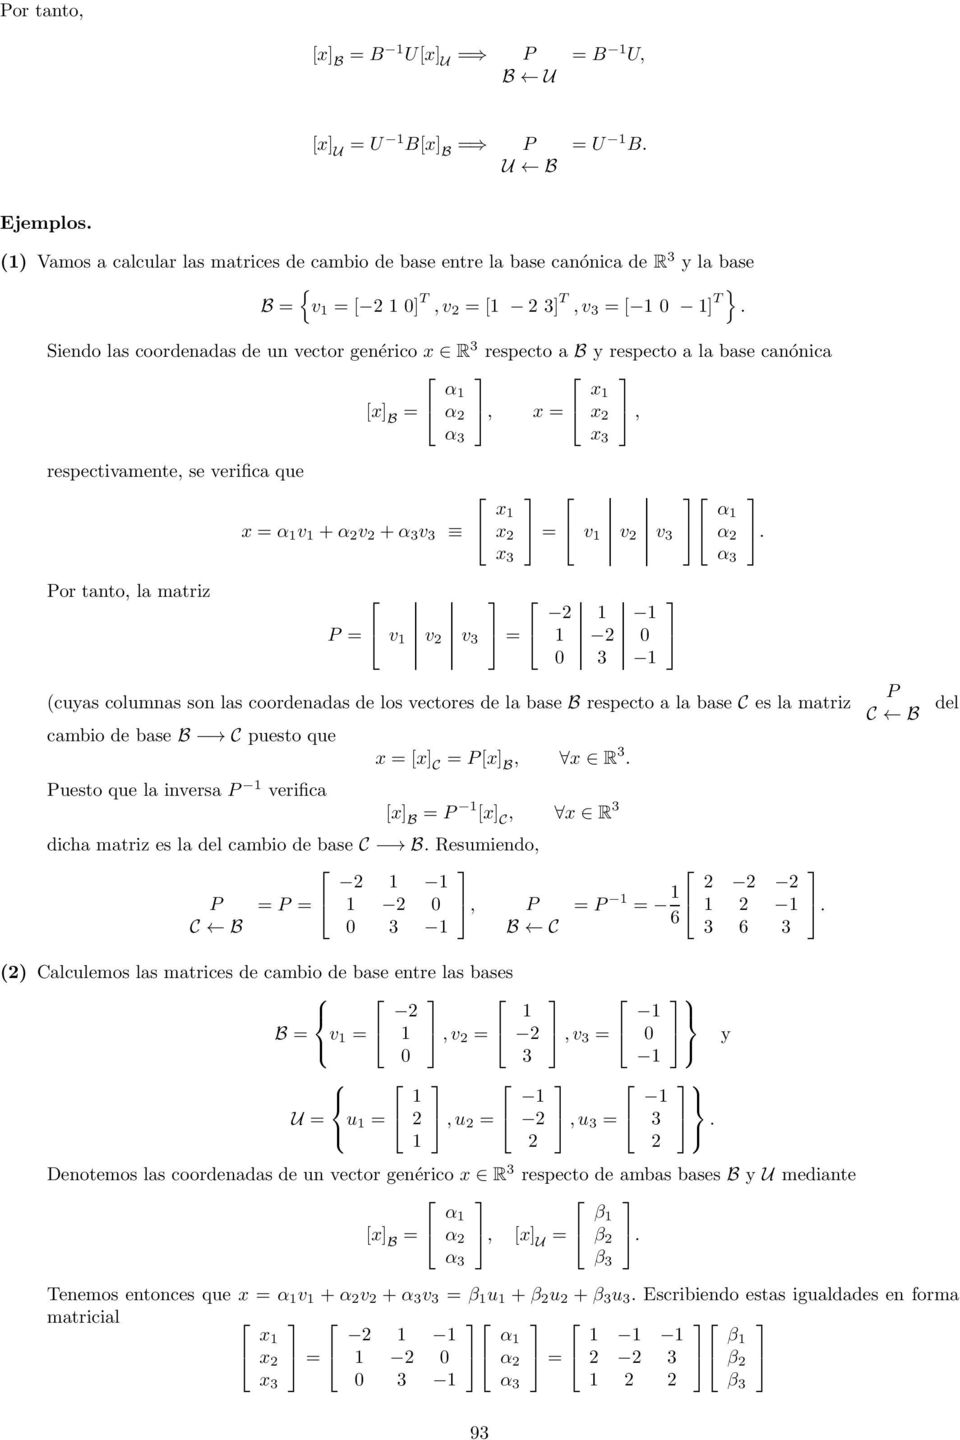 la matriz P = v v v = (cuyas columnas son las coordenadas de los vectores de la base B respecto a la base C es la matriz cambio de base B C puesto que Puesto que la inversa P verifica x = [x C = P[x